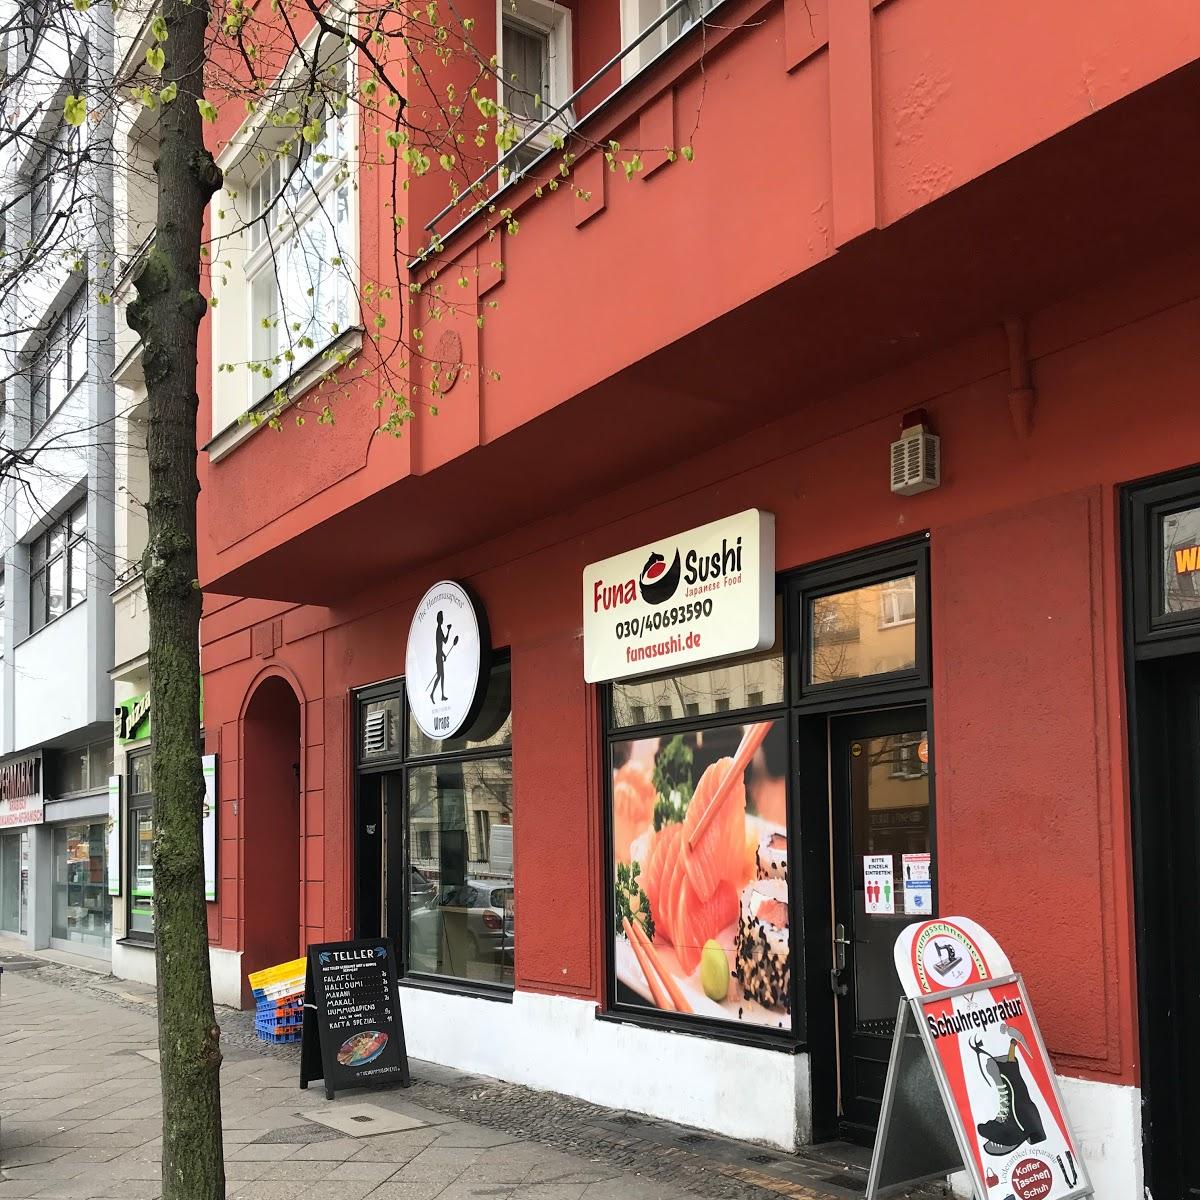 Restaurant "Funa Sushi Moabit" in Berlin